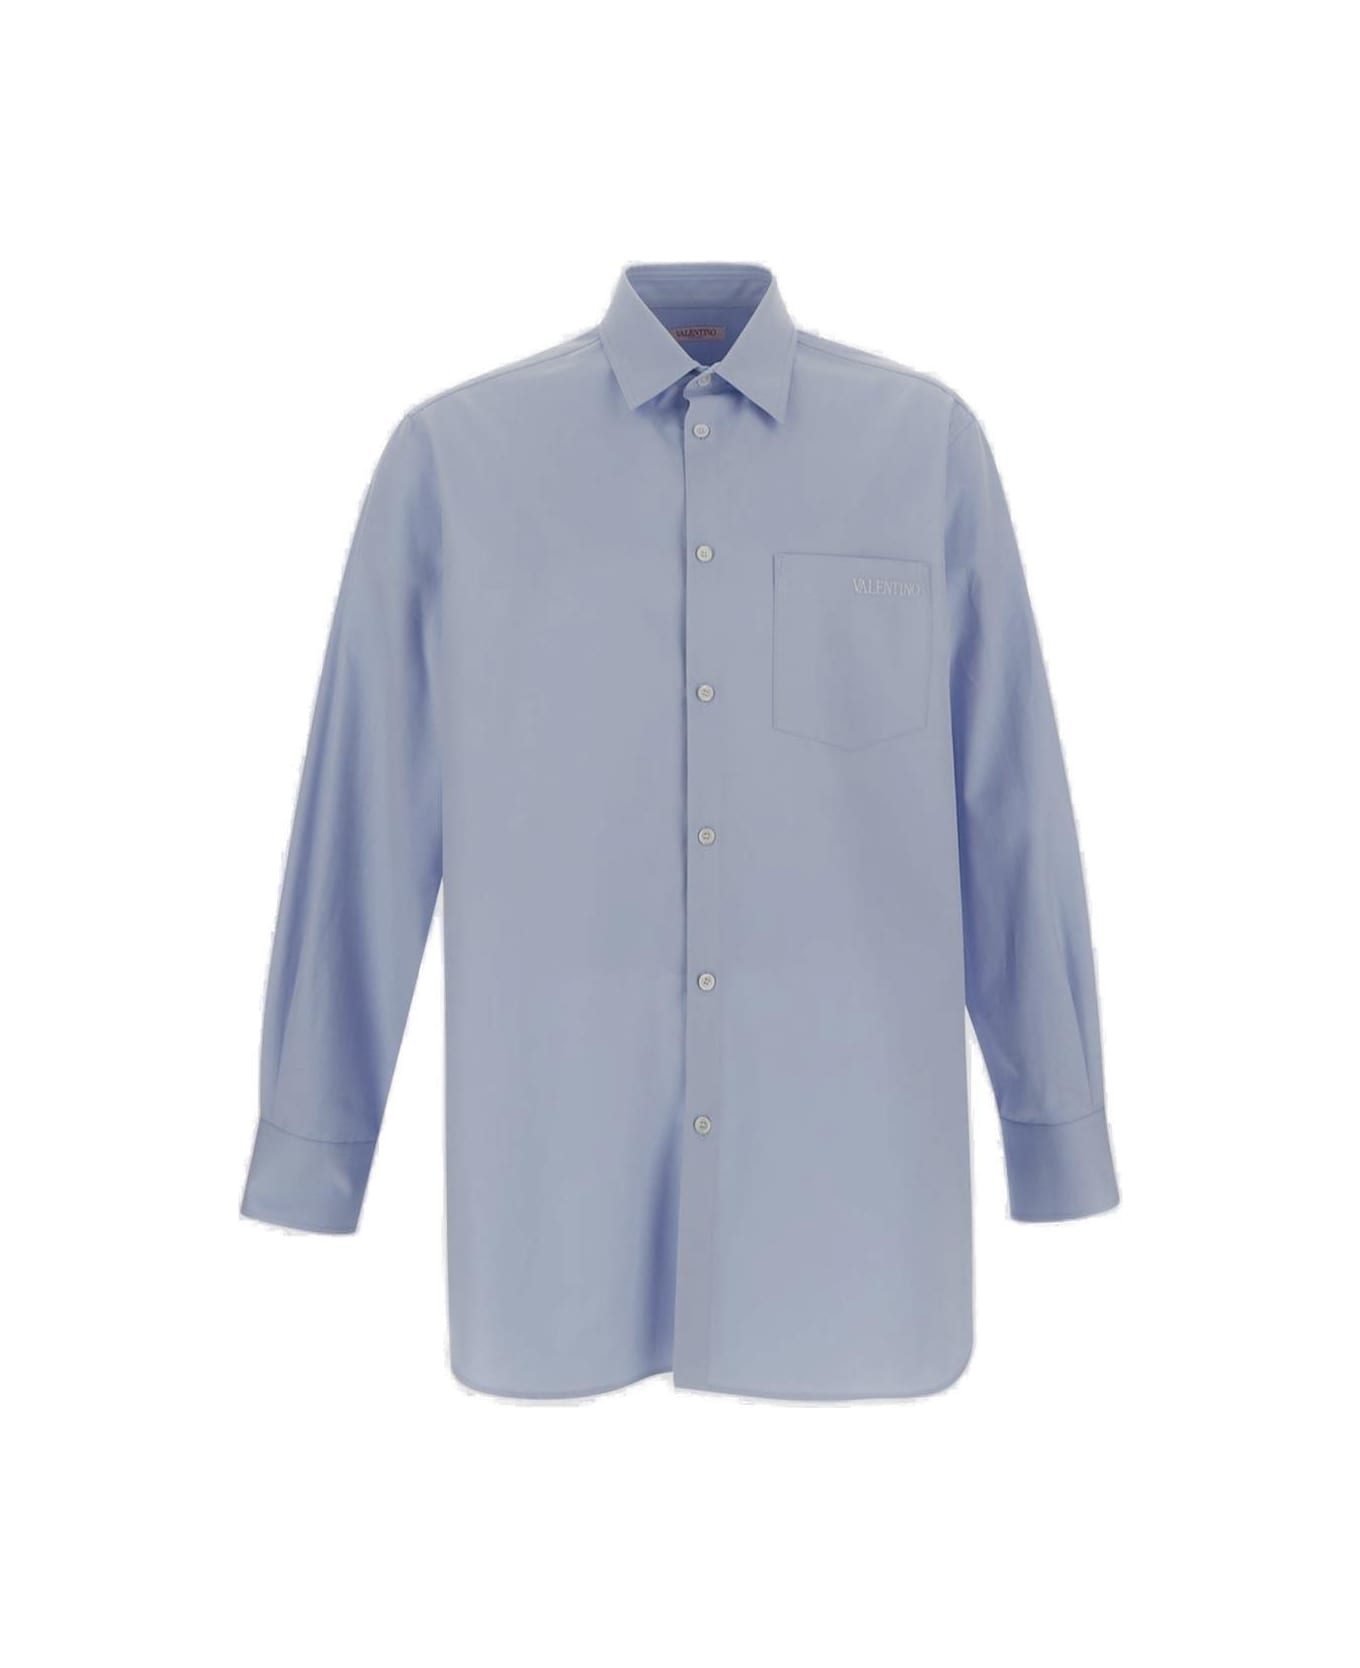 Valentino Classic Chest Pocket Shirt - Azure シャツ